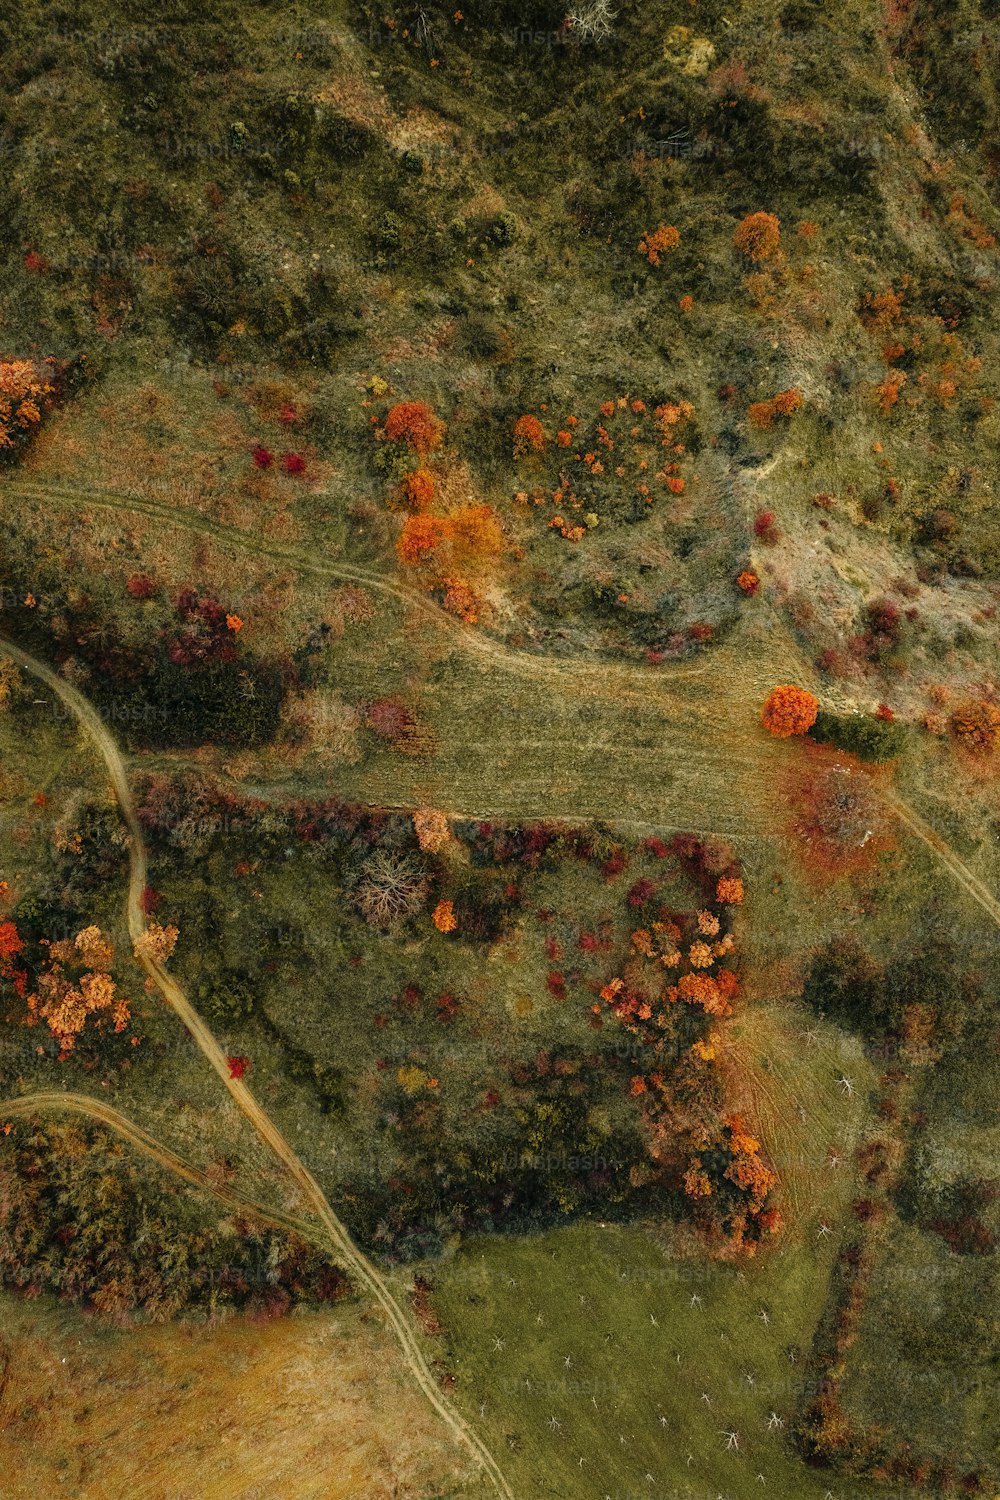 uma vista aérea de uma área gramada com árvores